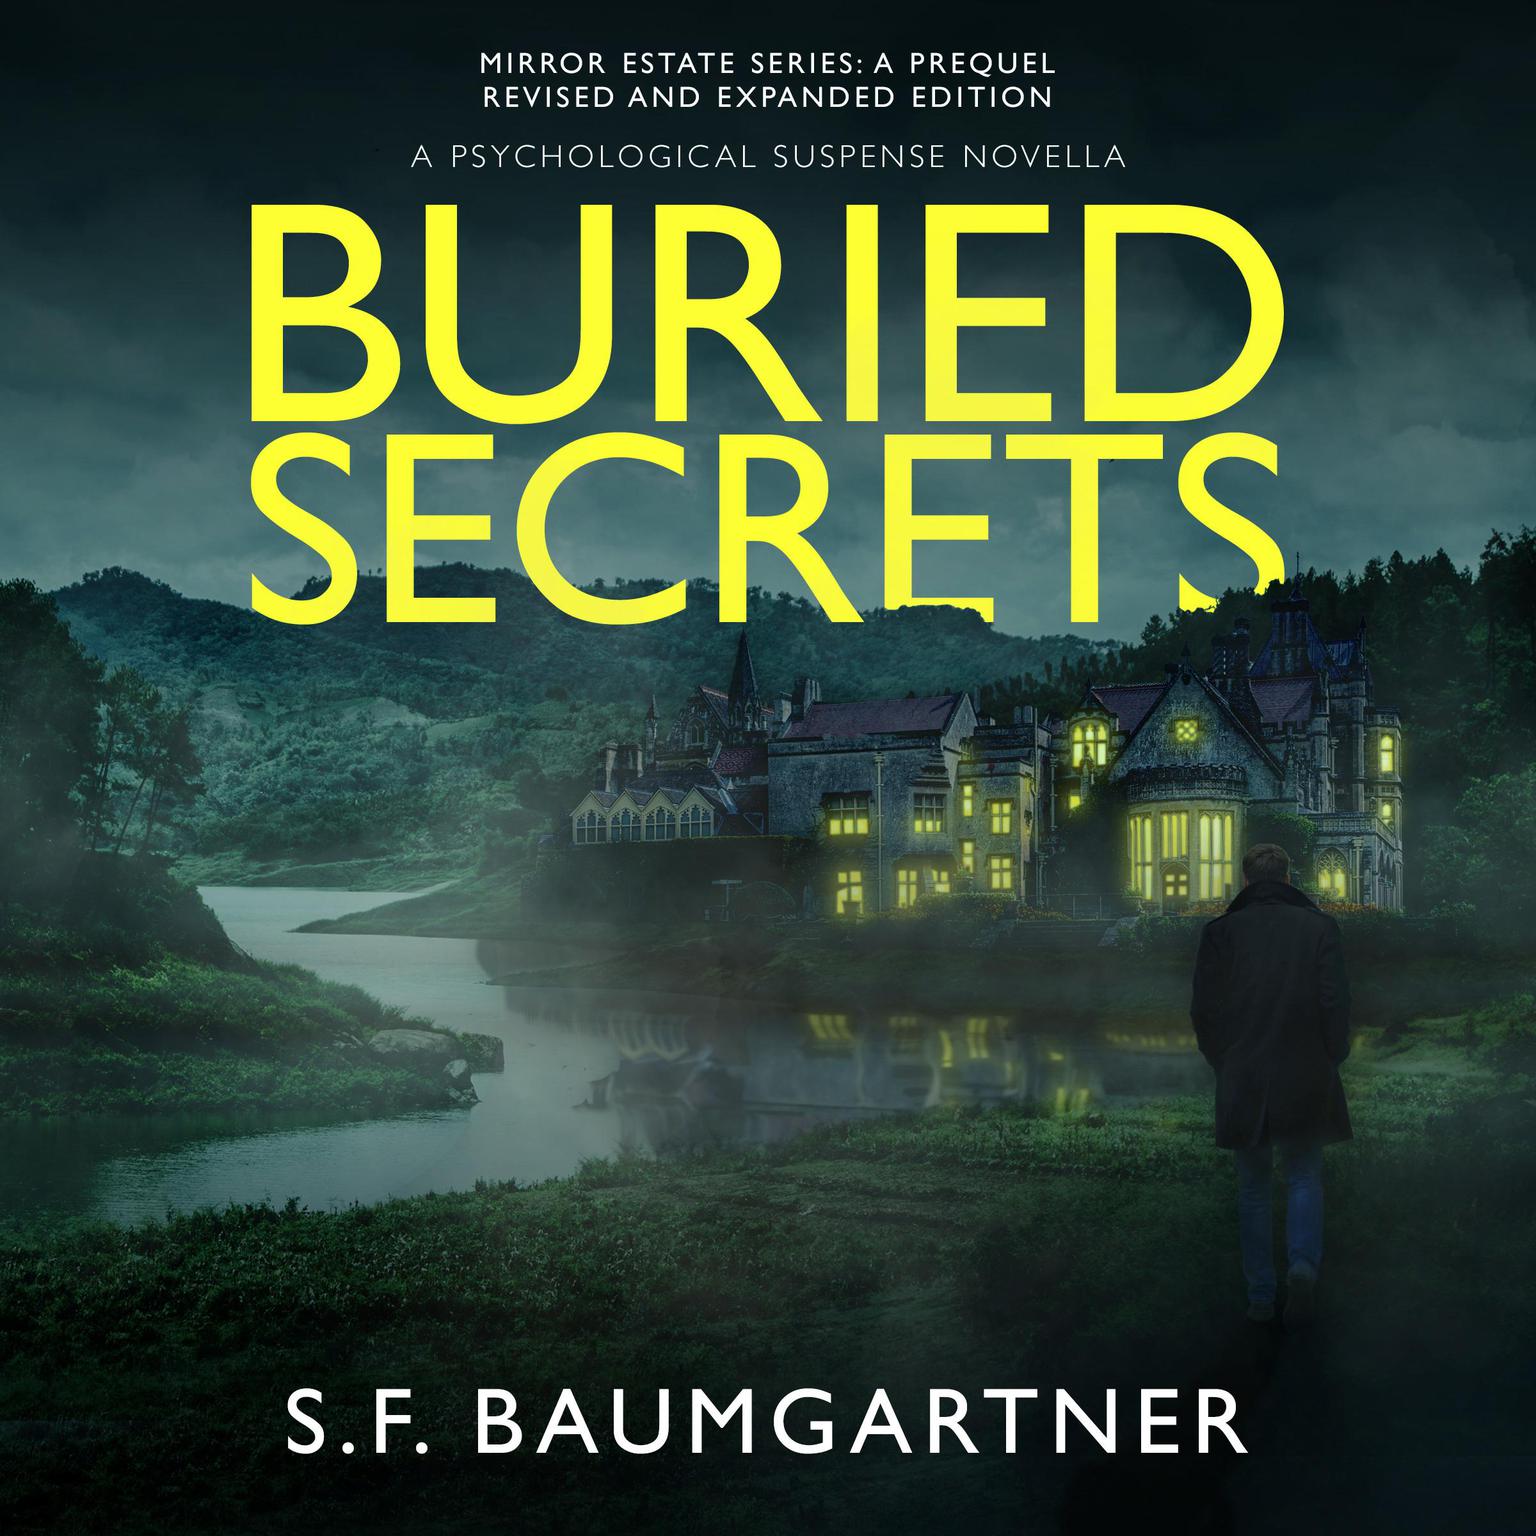 Buried Secrets: A Psychological Suspense Novella Audiobook, by S.F. Baumgartner